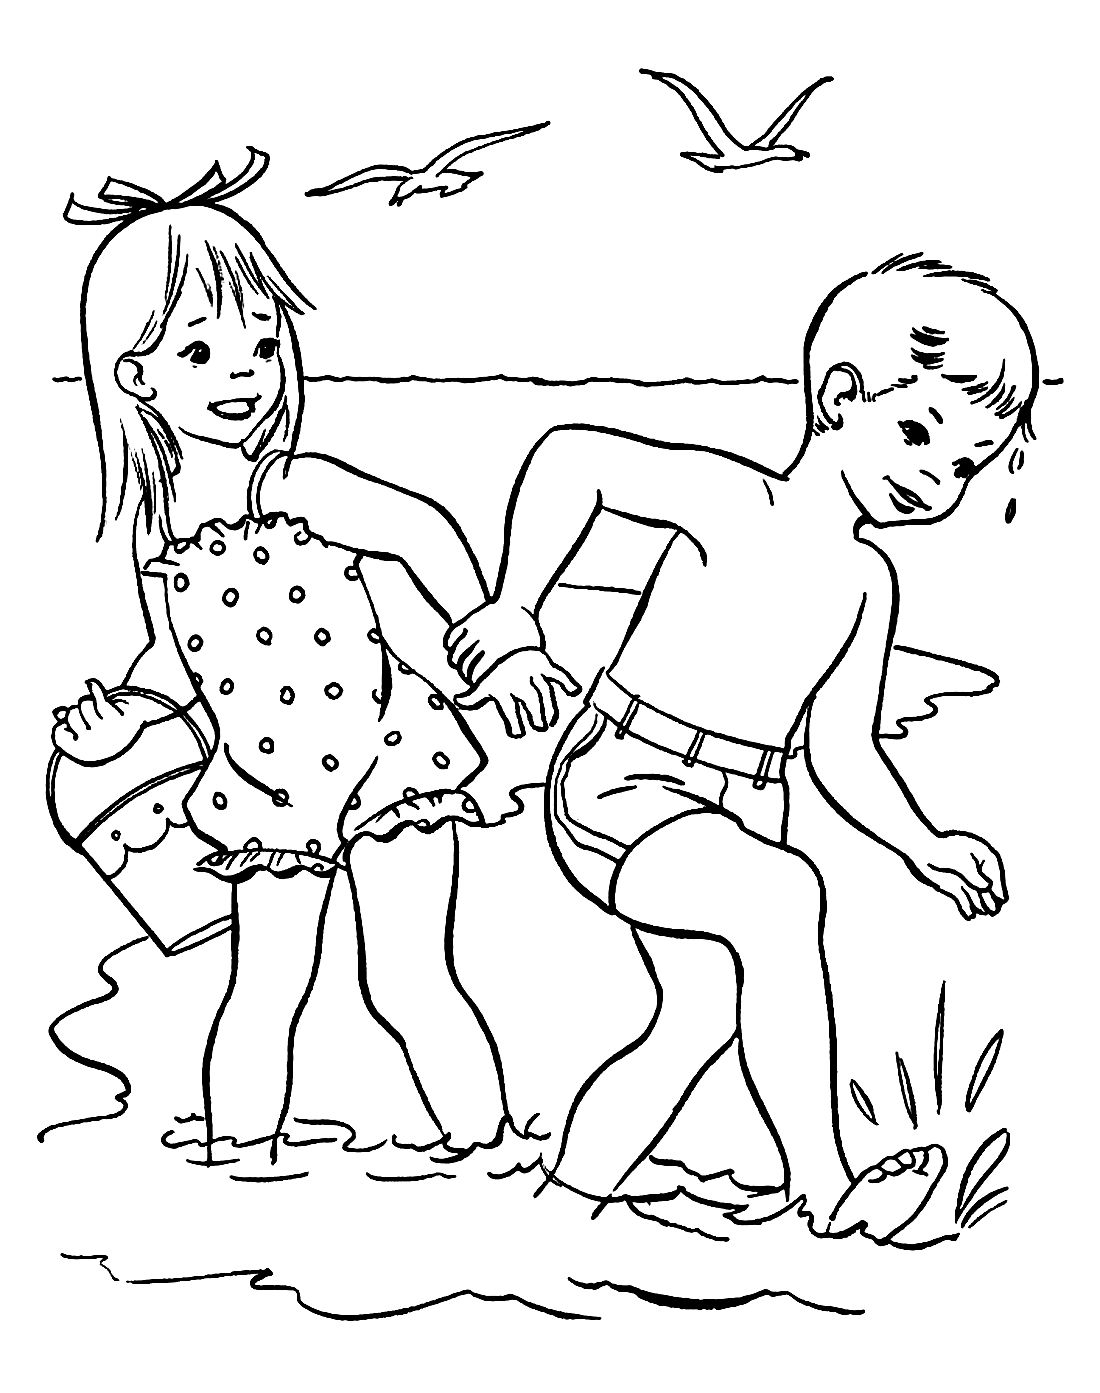 эротика в картинках для детей (119) фото